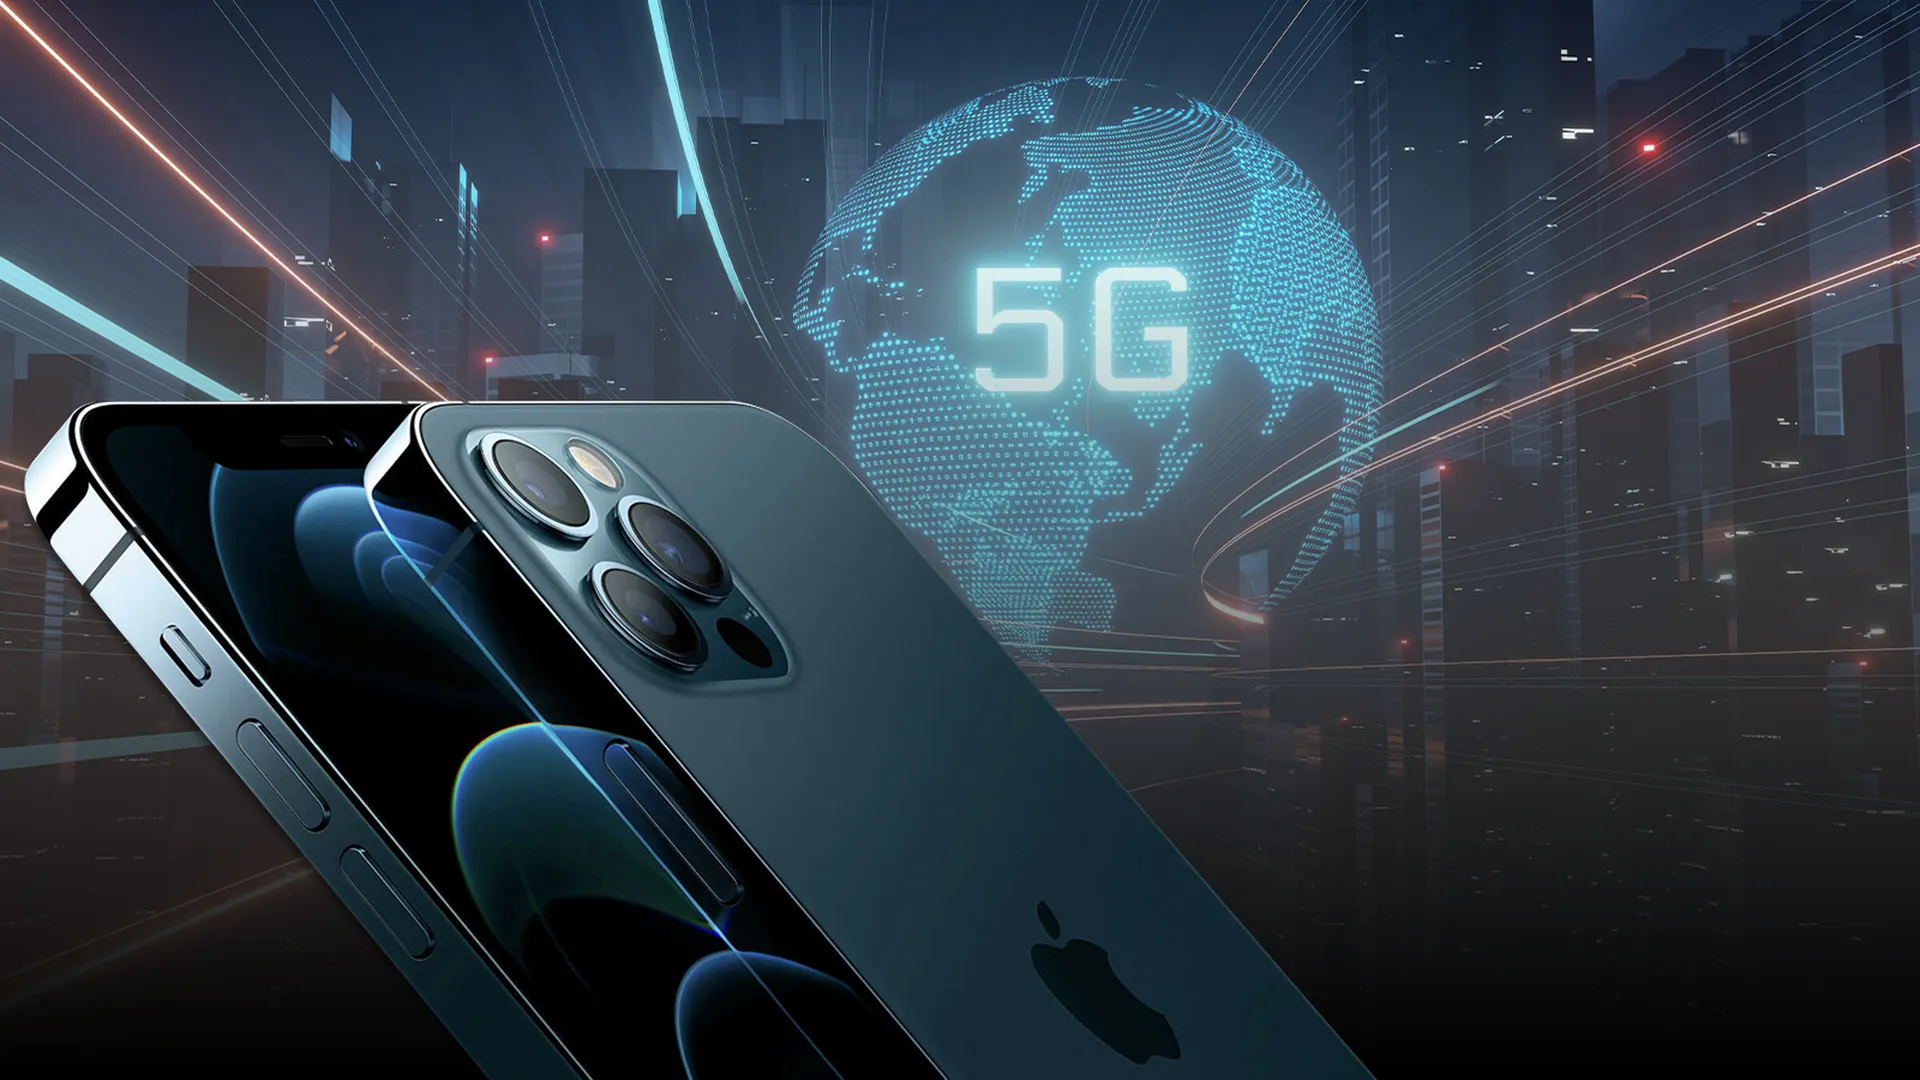 Новые iPhone получили поддержку сетей 5G. Но в России технология долго будет бесполезной